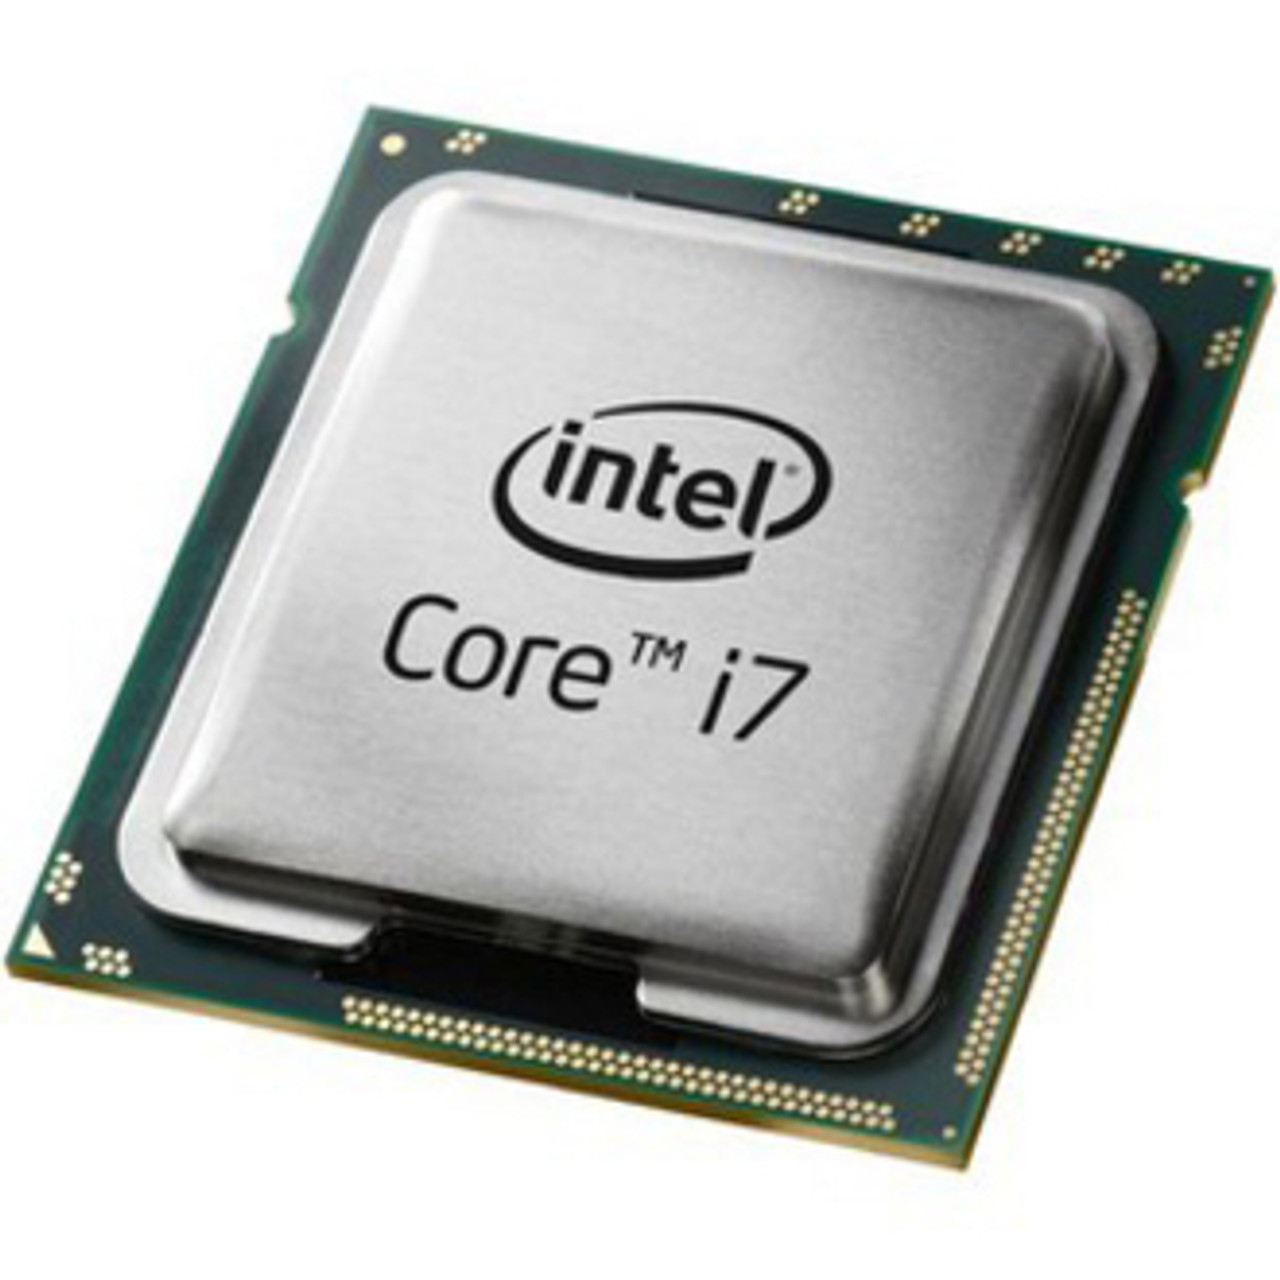 Intel Core i7 i7-2600 i7-2600 Quad-core (4 Core) 3.40 GHz Processor - OEM Pack - CM8062300834302